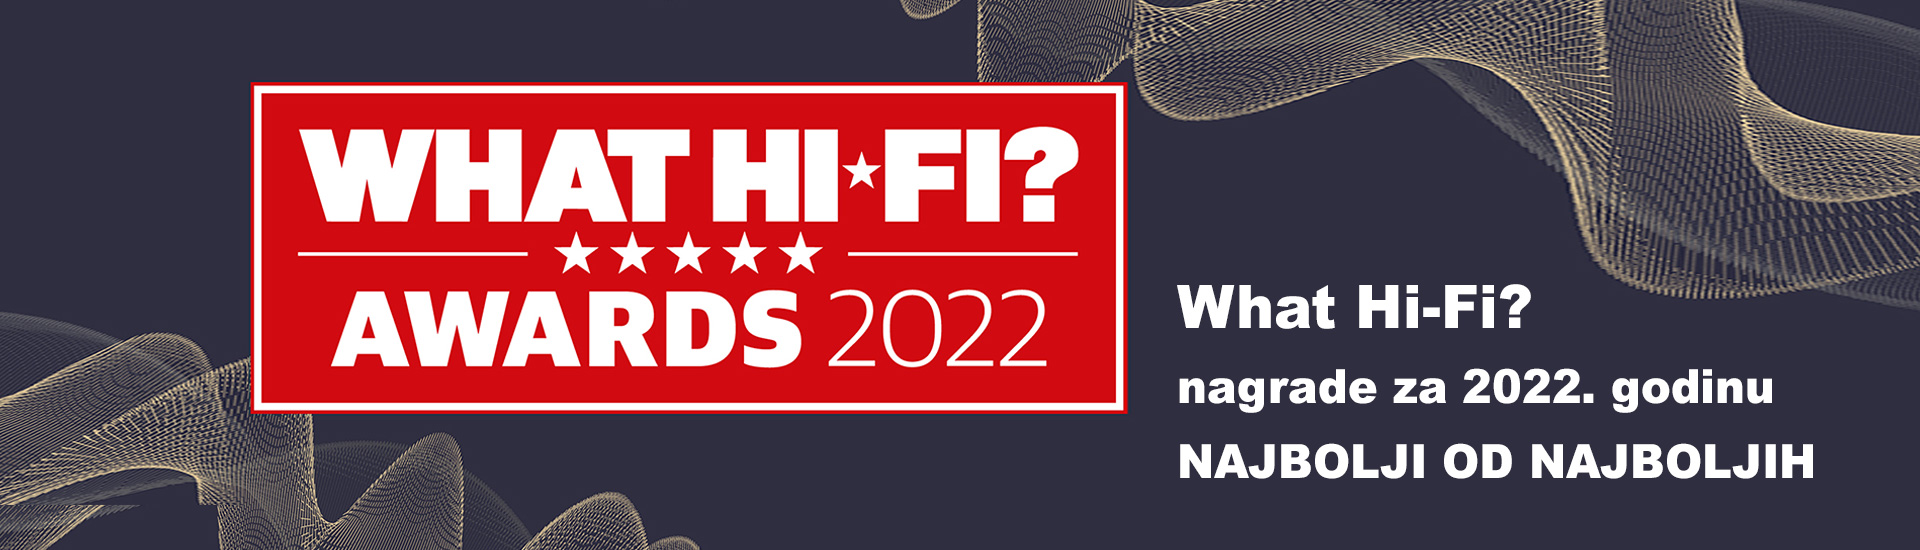 What Hi-Fi? nagrade za 2022. godinu - najbolji od najboljih